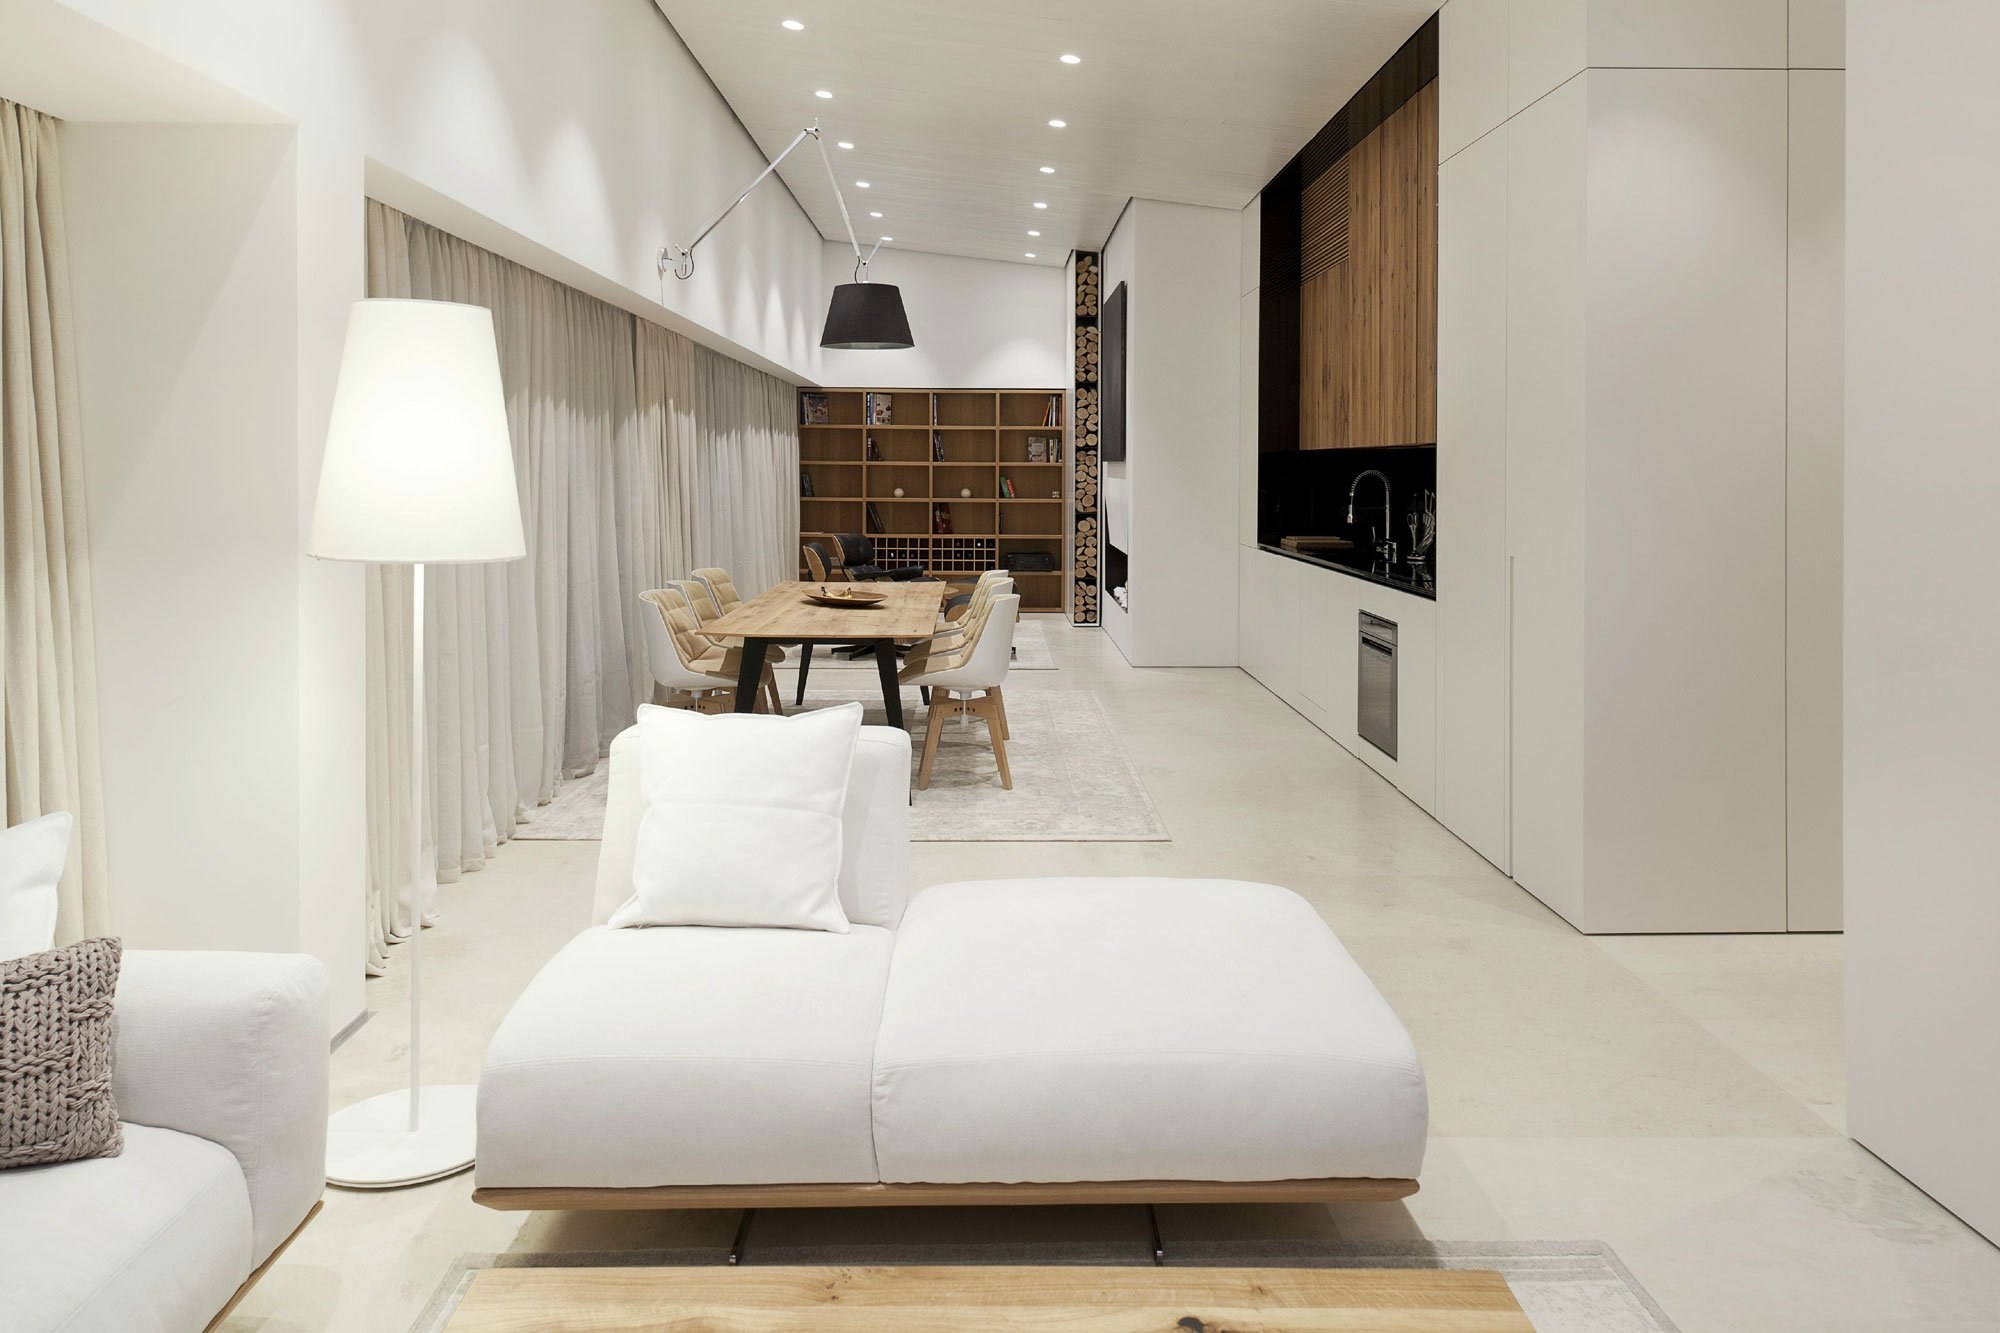 красивые интерьеры квартир в современном стиле в светлых тонах